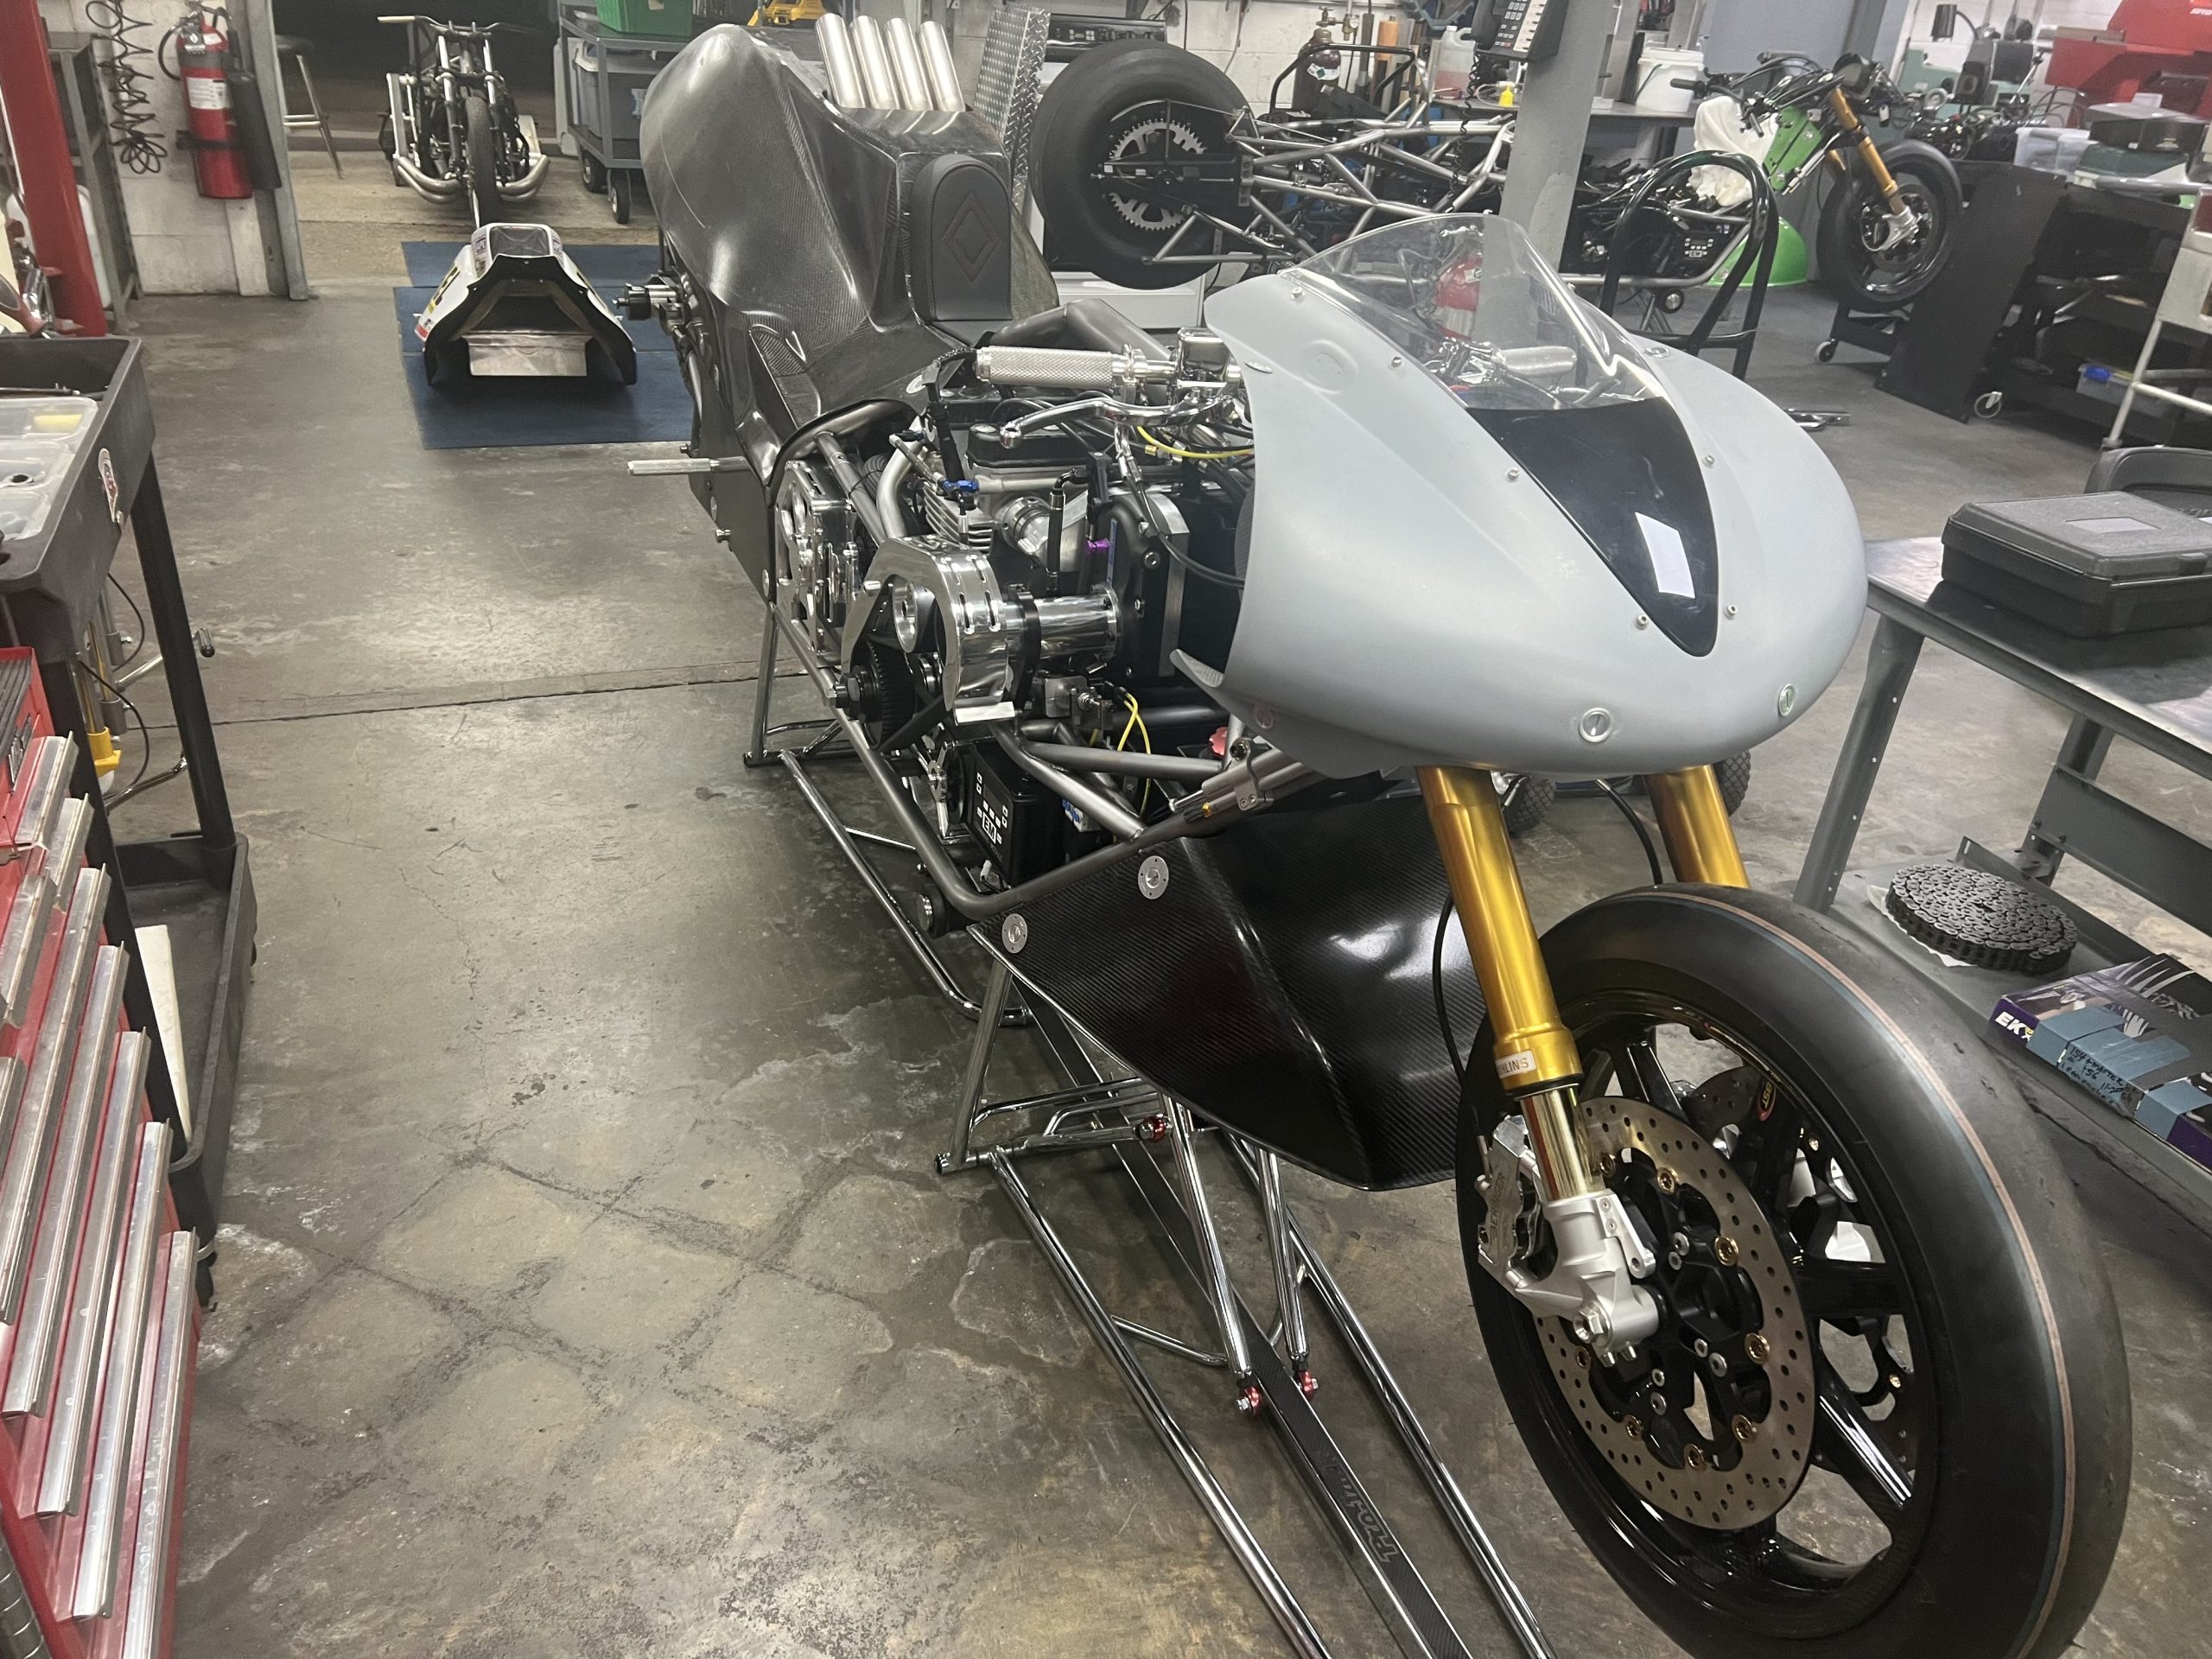 Dave Vantine New Top Fuel Motorcycle